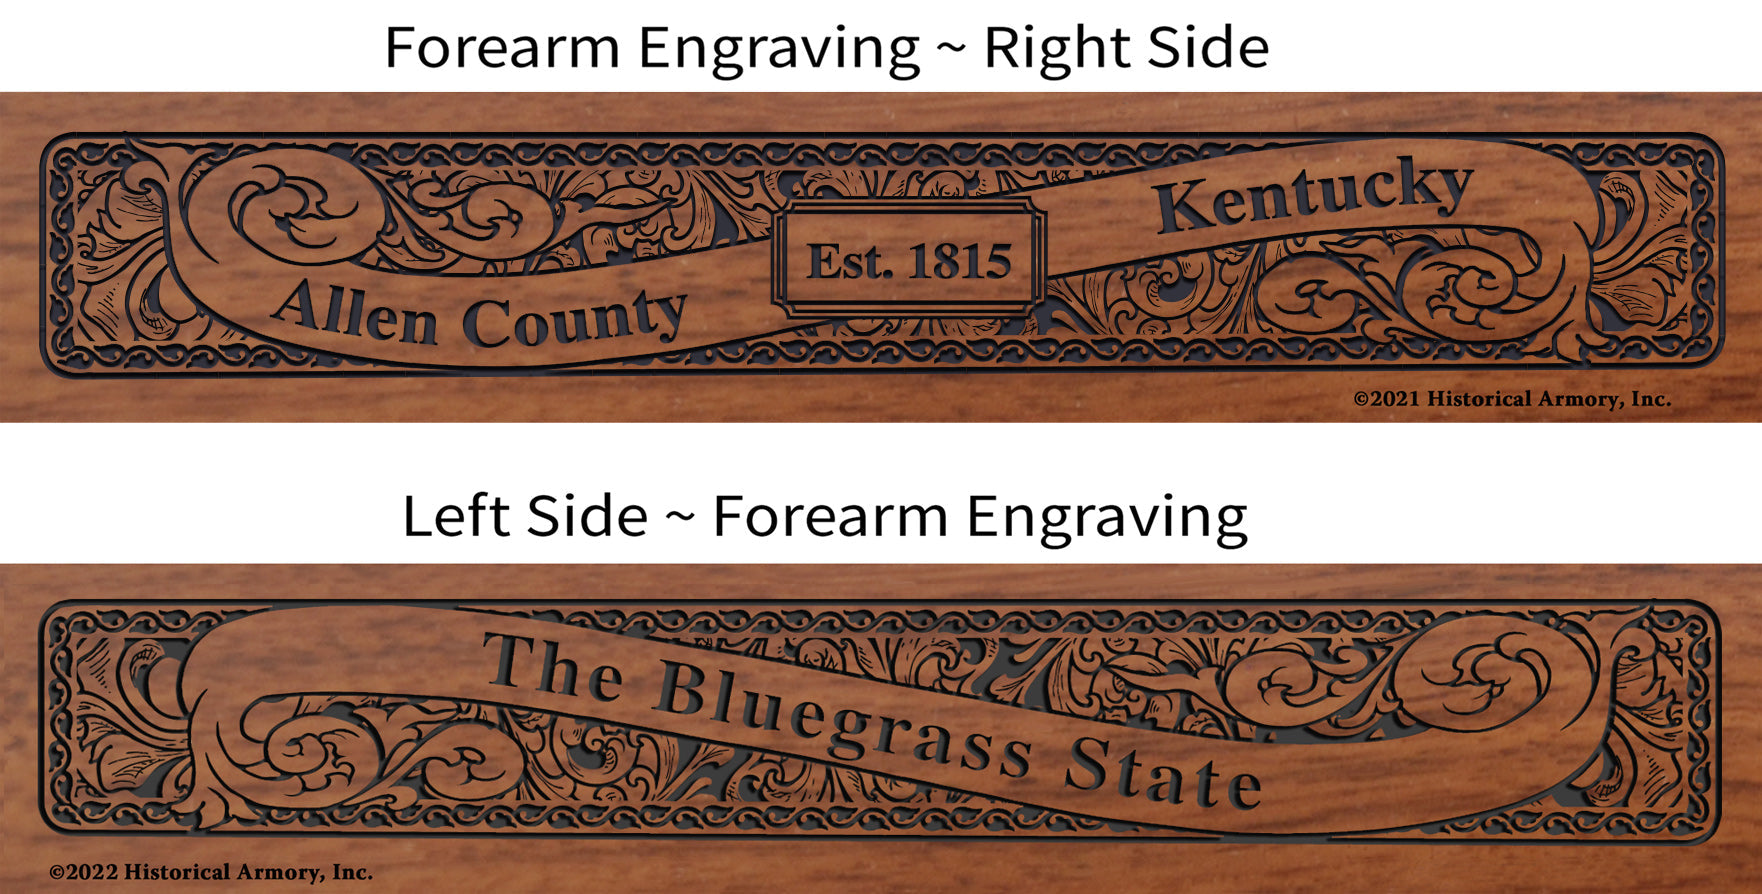 Allen County Kentucky Engraved Rifle Forearm